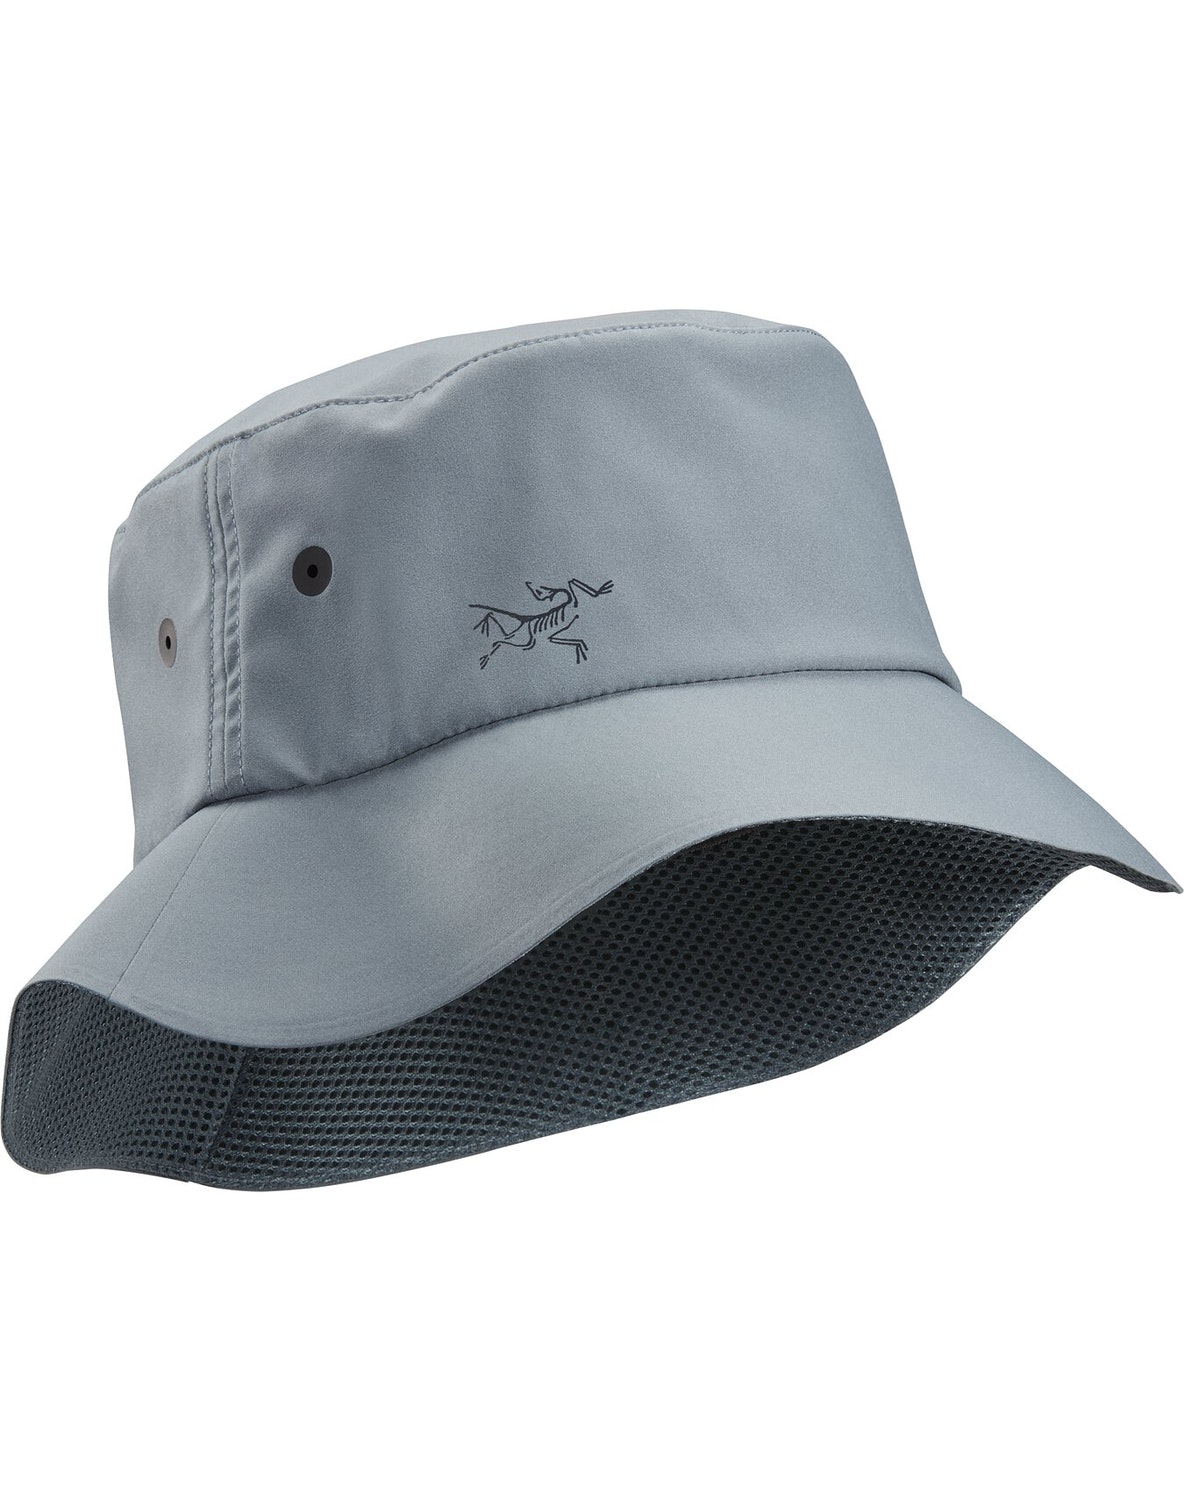 Hats Arc'teryx Sinsolo Uomo Verdi Scuro - IT-7571635